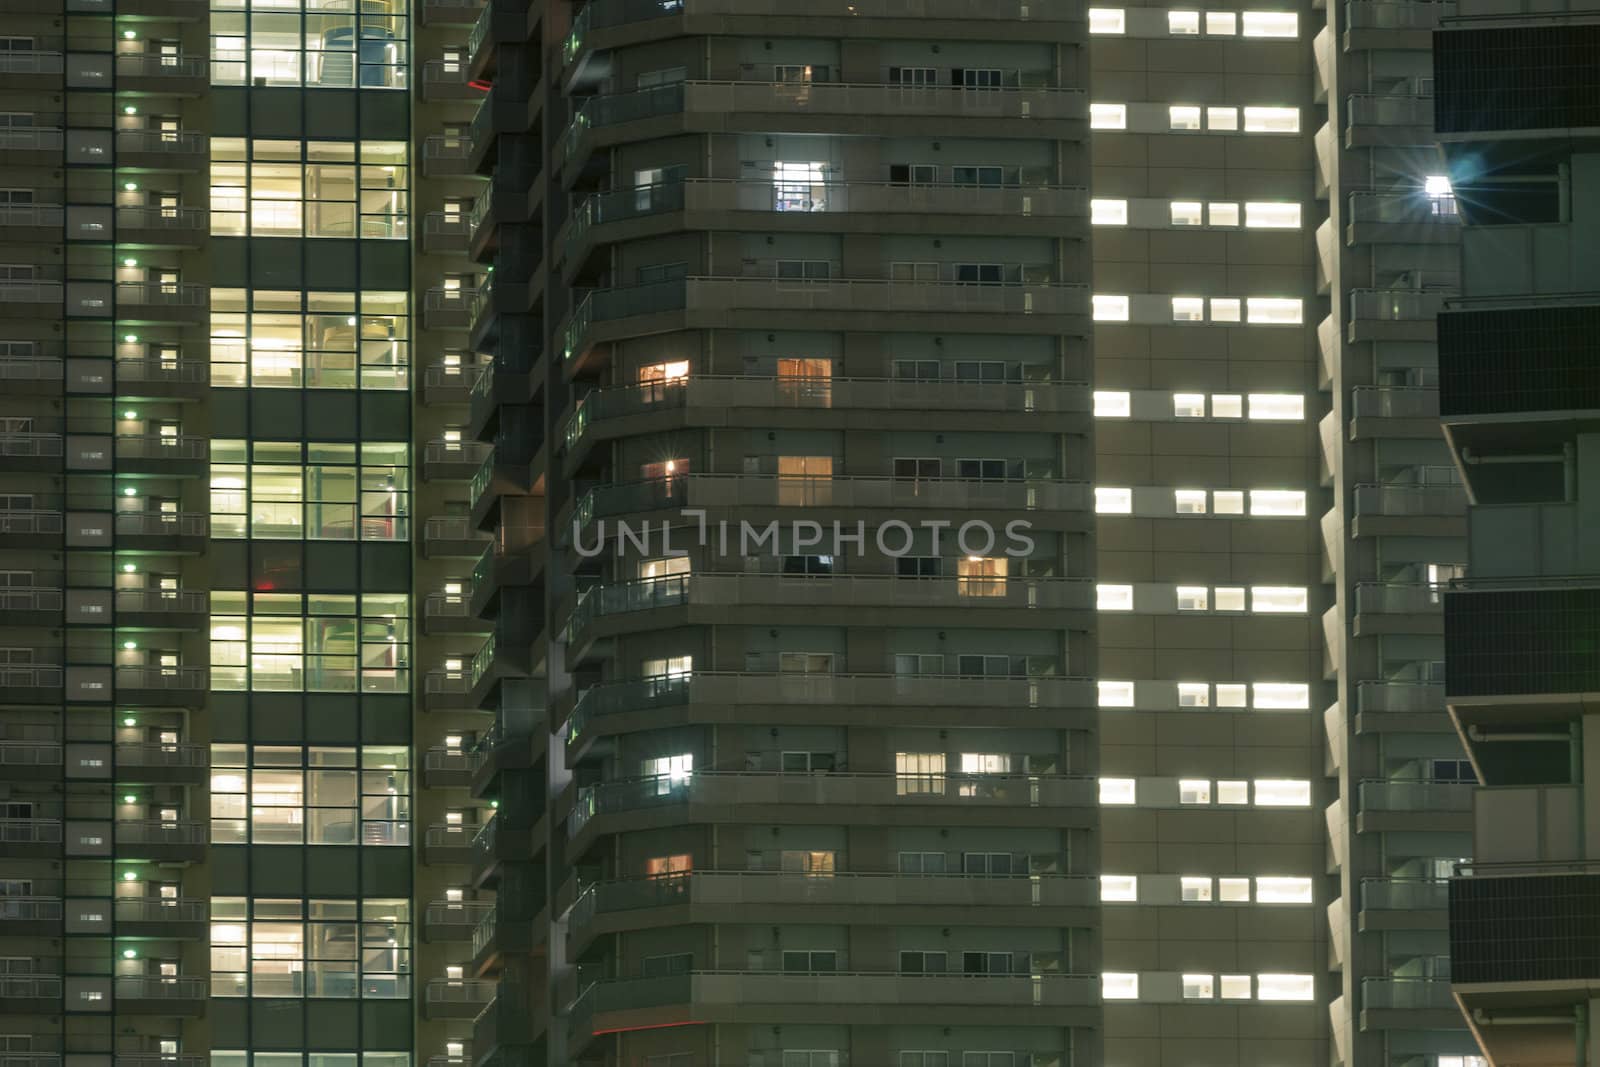  highly-detailed night windows pattern of modern metropolis, Tokyo, Japan